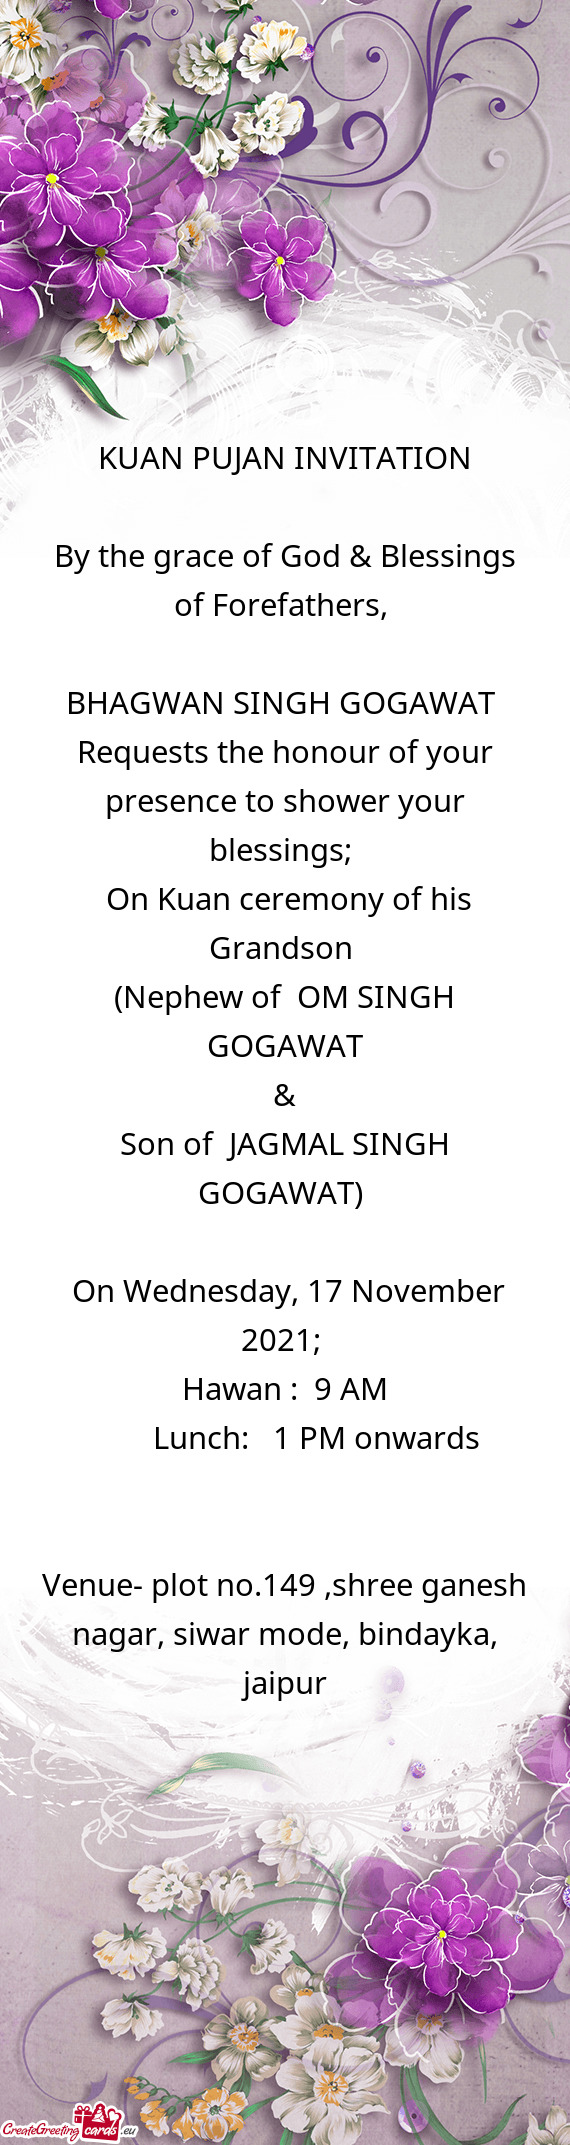 BHAGWAN SINGH GOGAWAT